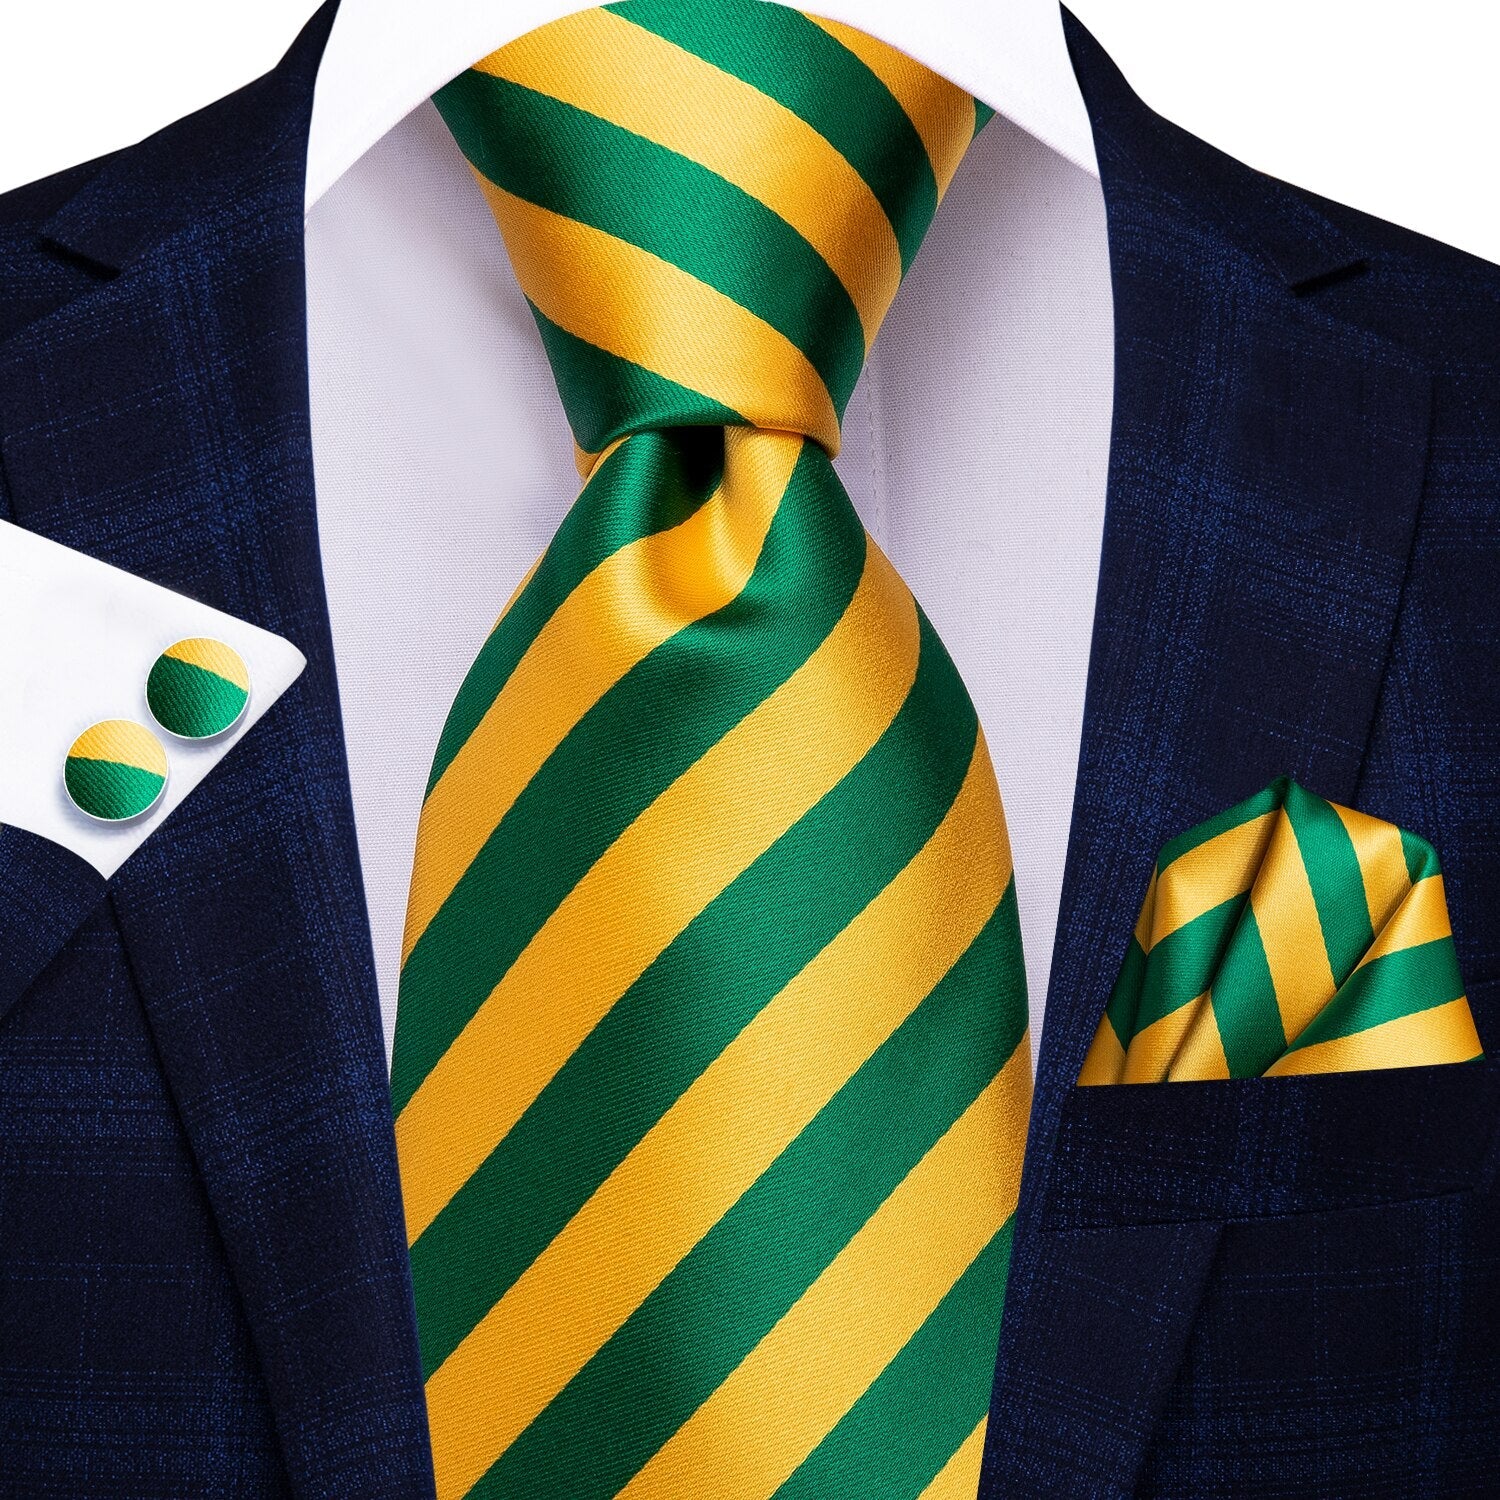 Corbata de Rayas Amarillas y Verdes